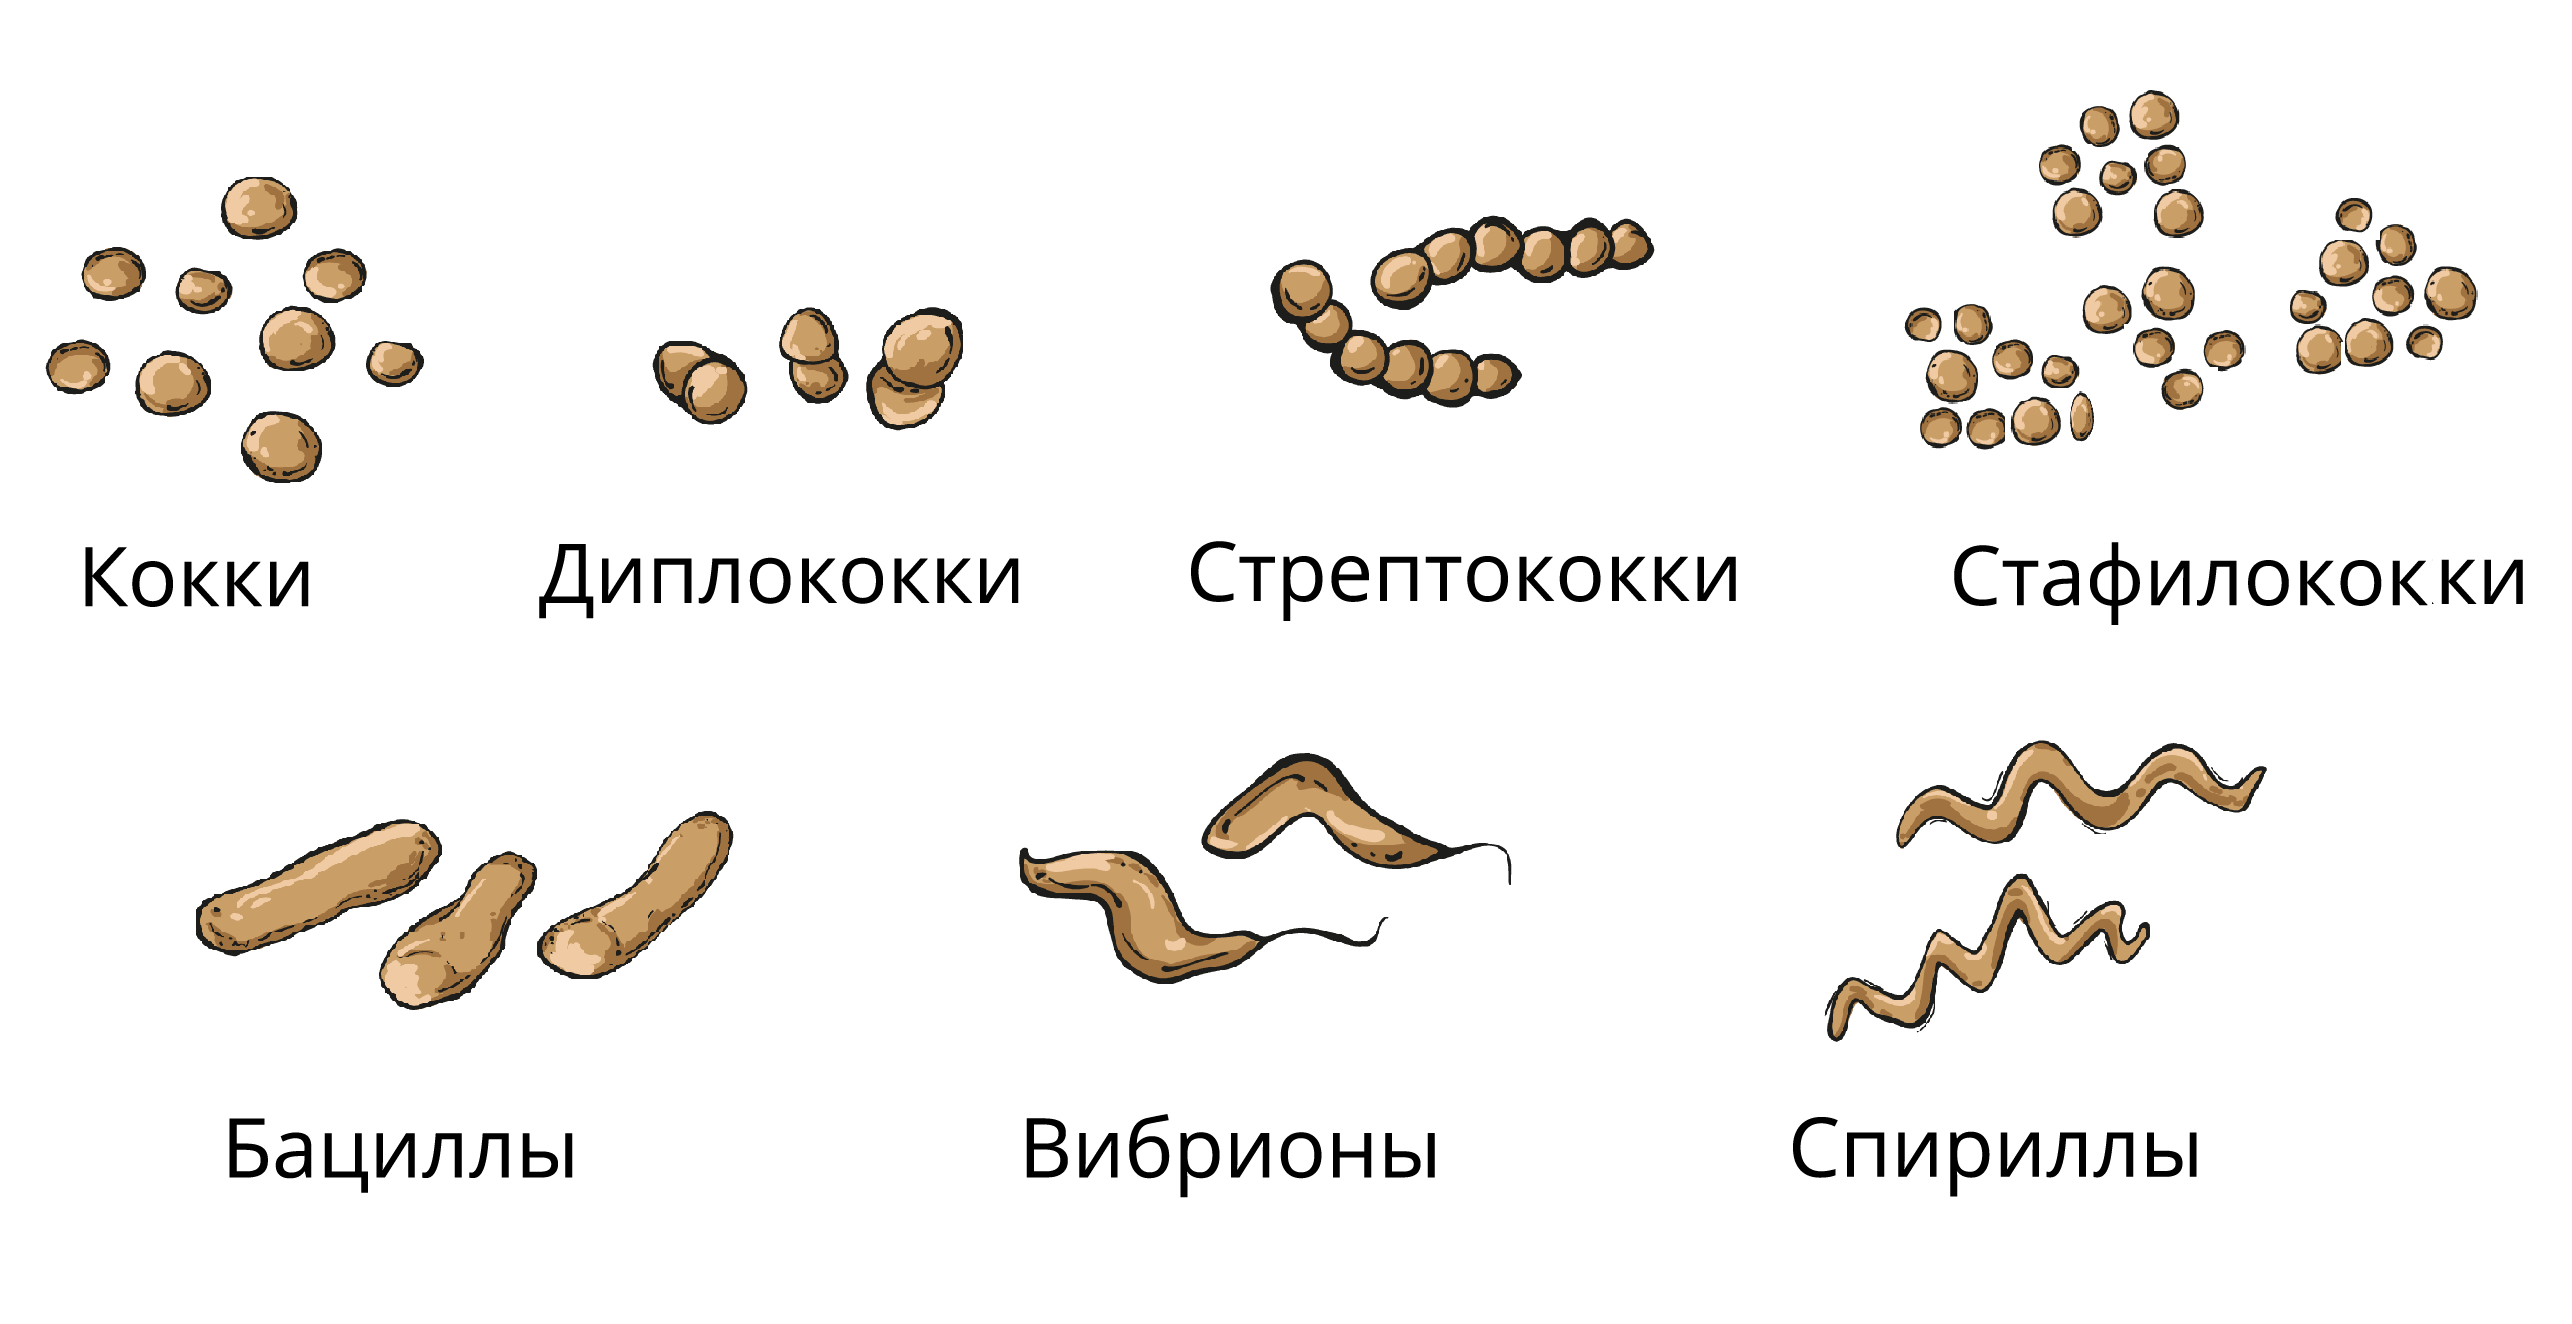 Бактерии округлой формы. Кокки бациллы вибрионы спириллы. Кокки стрептококки бациллы. Кокки спириллы вибрионы палочки. Форма бактерий: кокки, бациллы, спириллы, вибрионы, стафилококки..